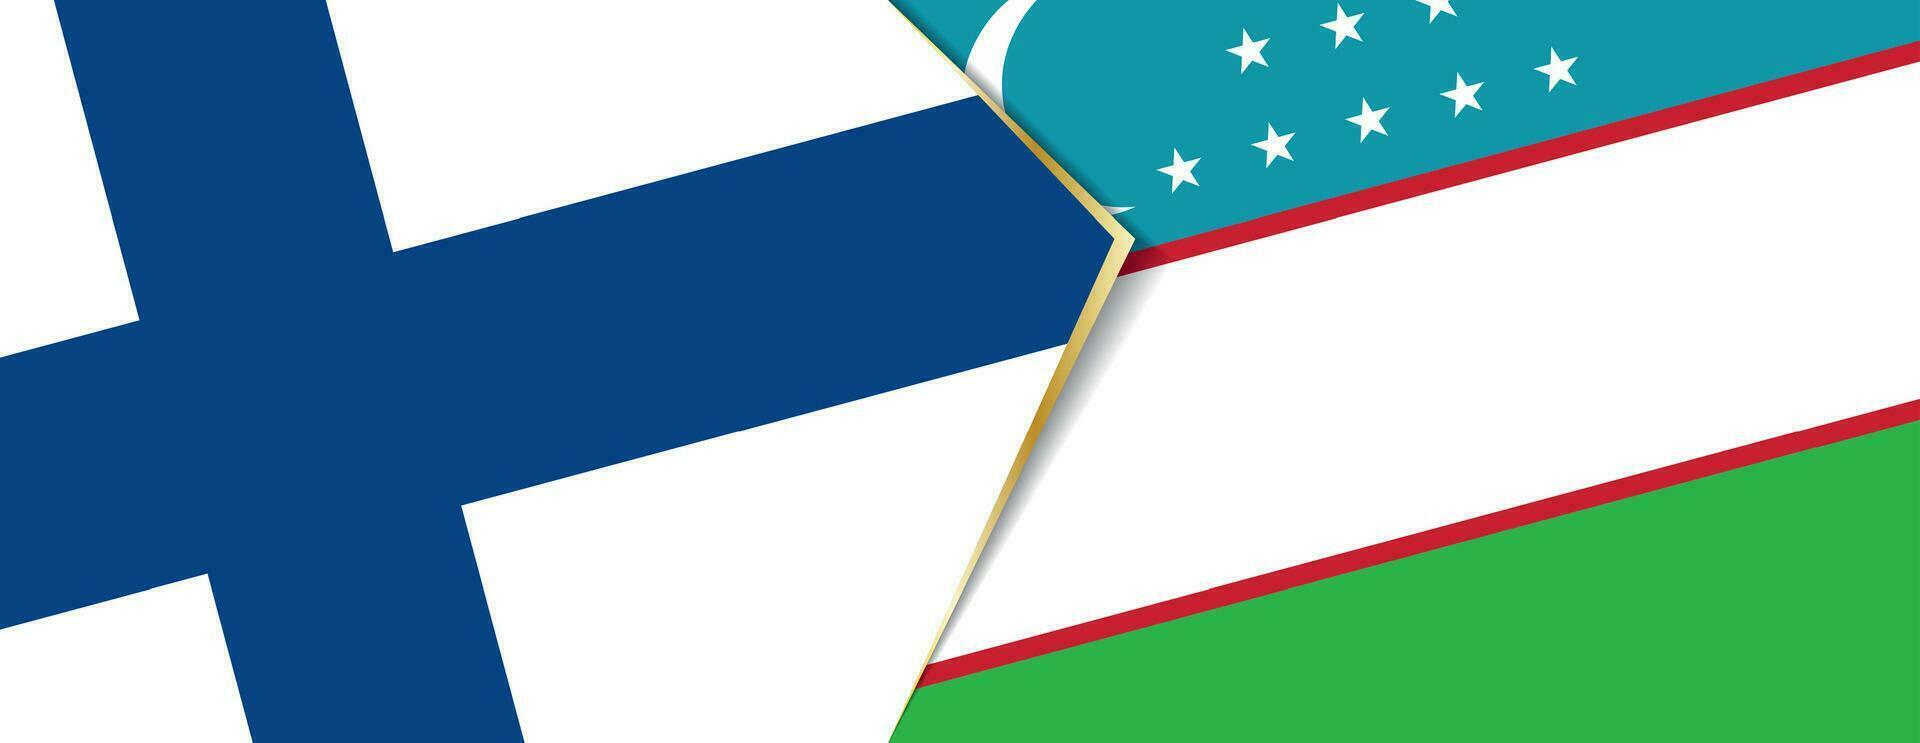 Finnland und Usbekistan Flaggen, zwei Vektor Flaggen.